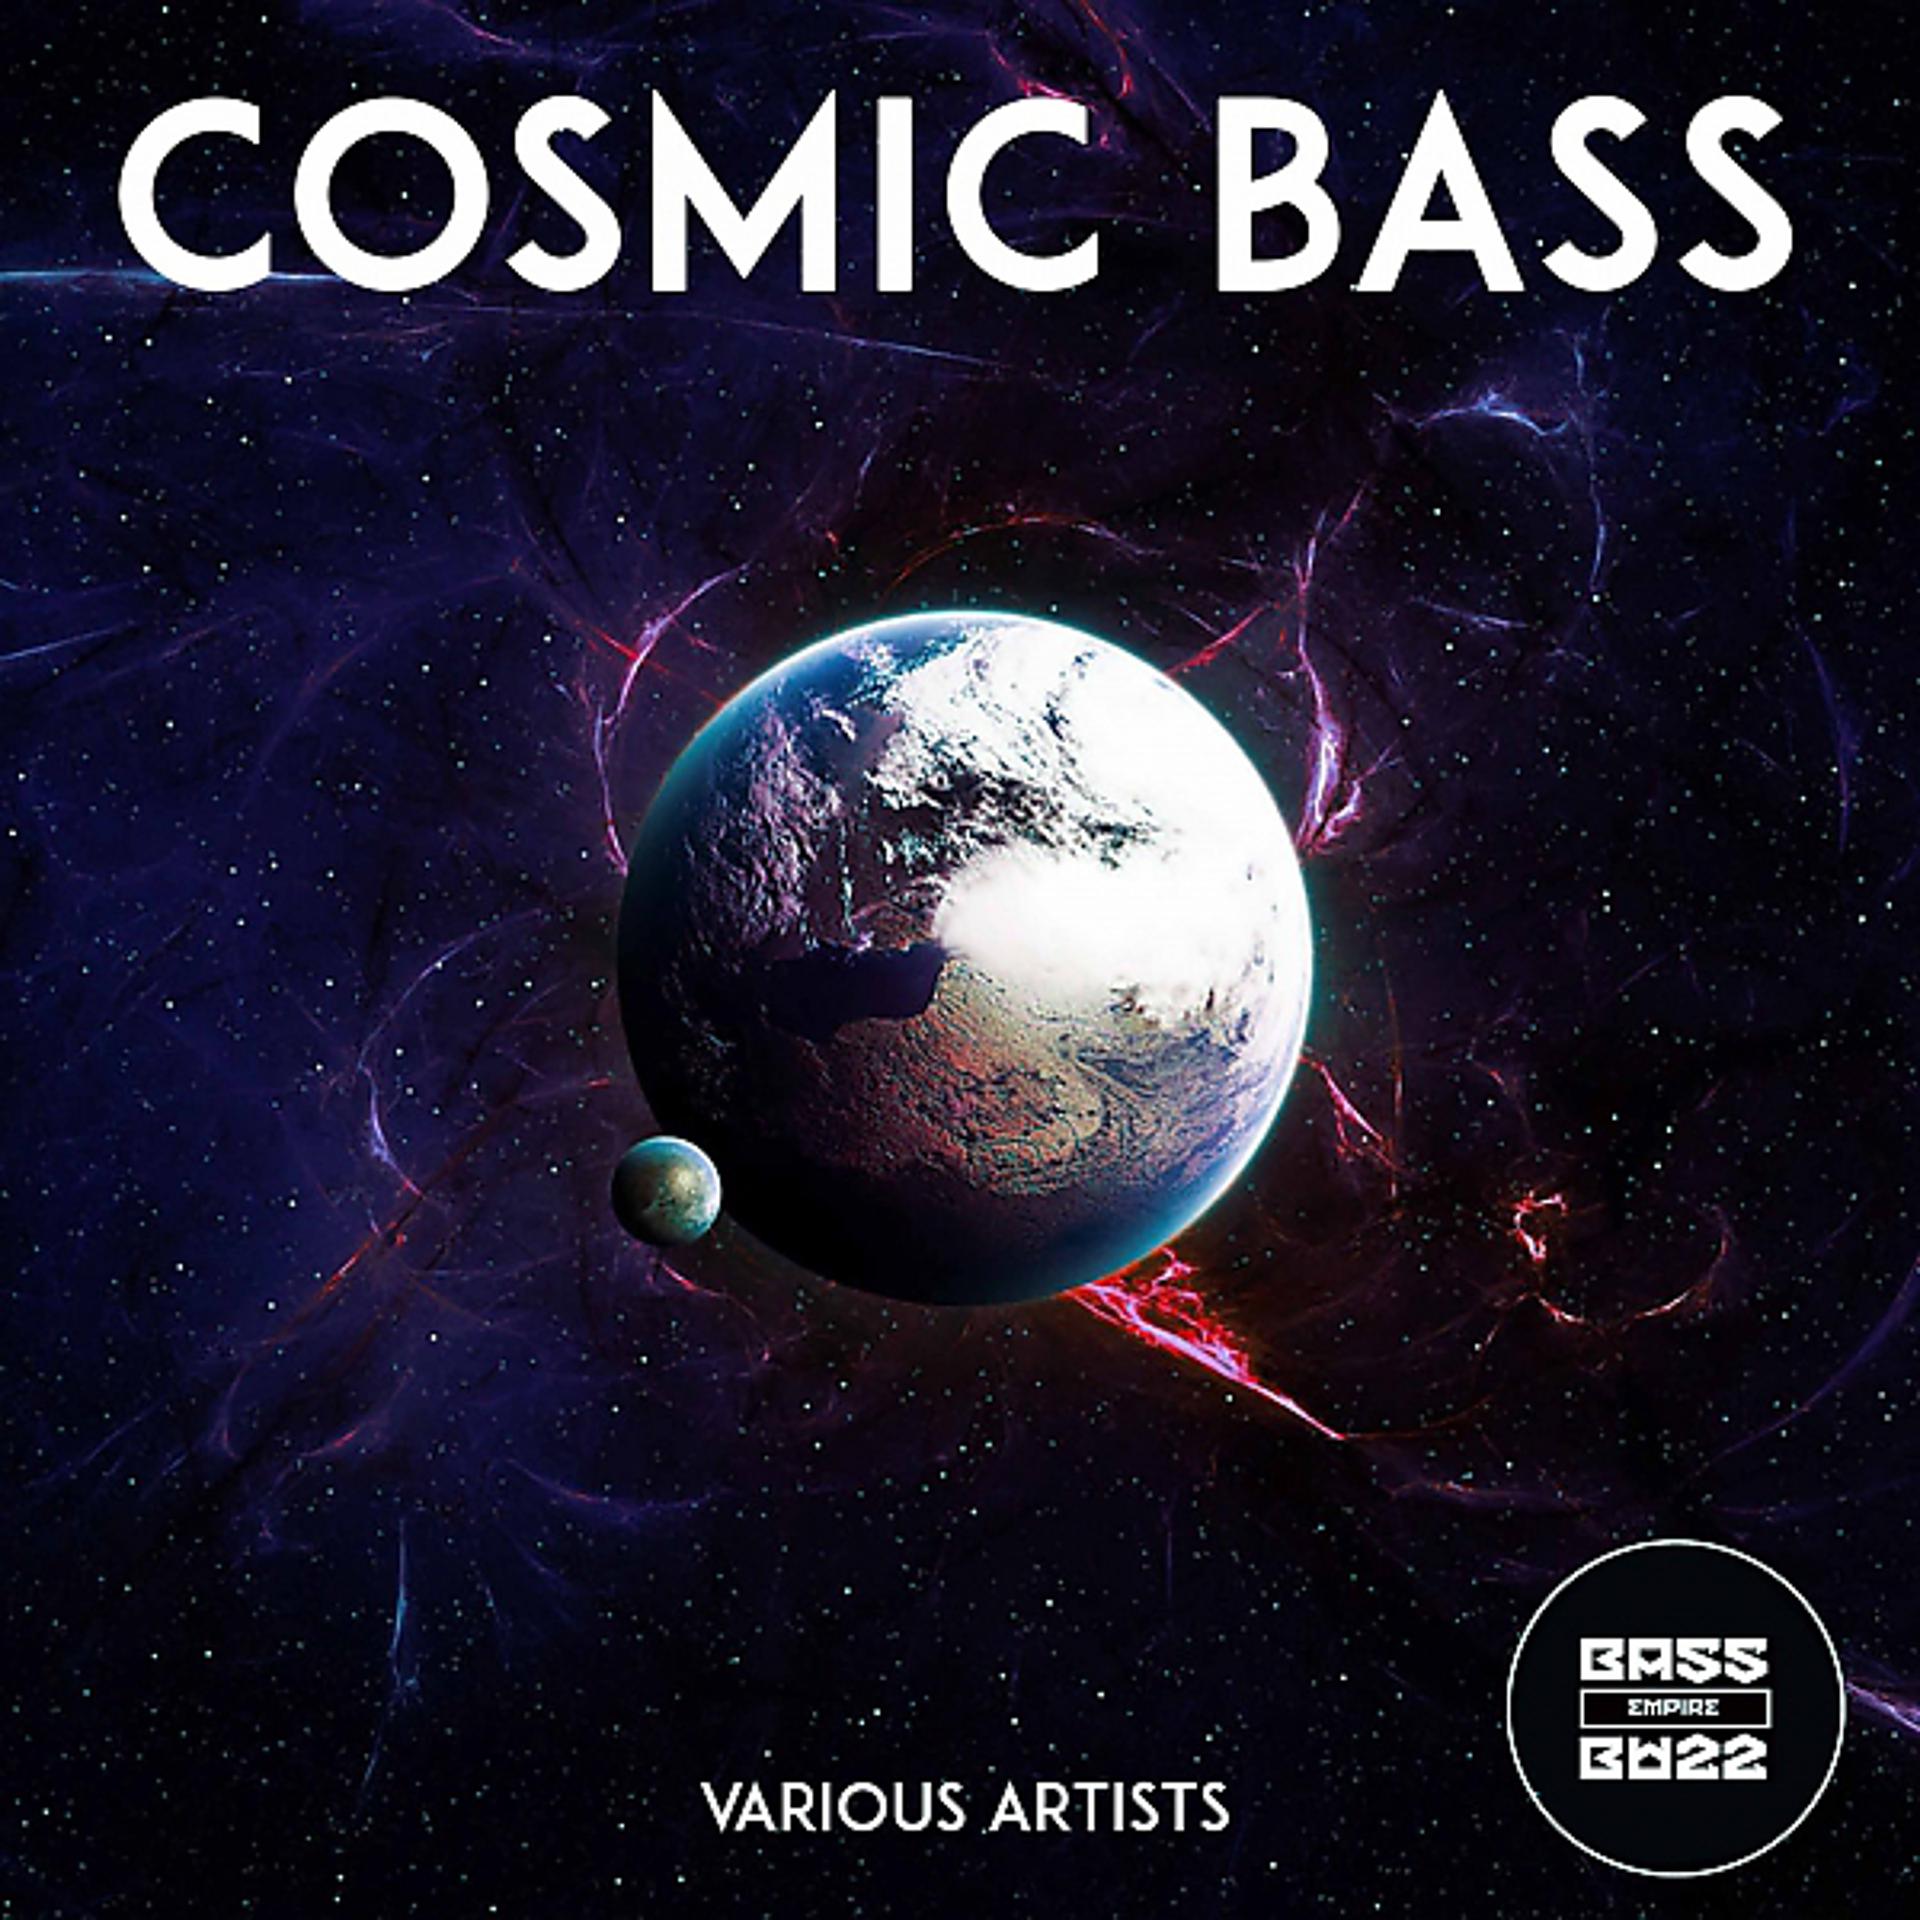 Cosmic bass